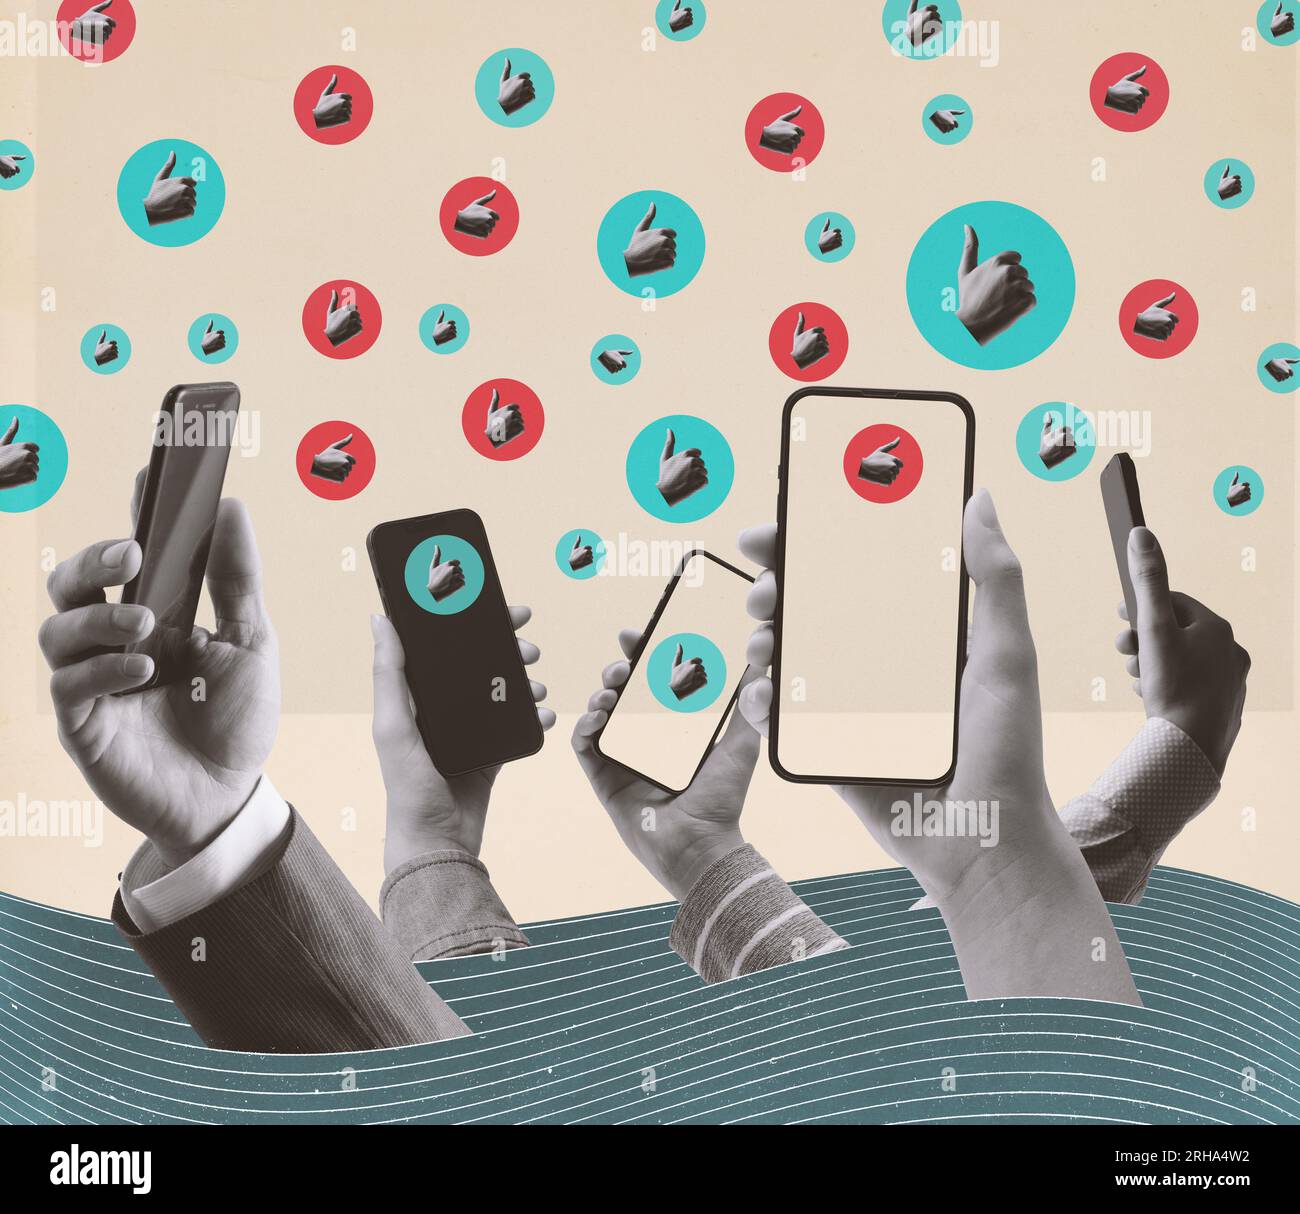 Viele Nutzer sozialer Medien stellen sich online: Hände halten Smartphones und Daumen hoch, Vintage-Collage-Design Stockfoto